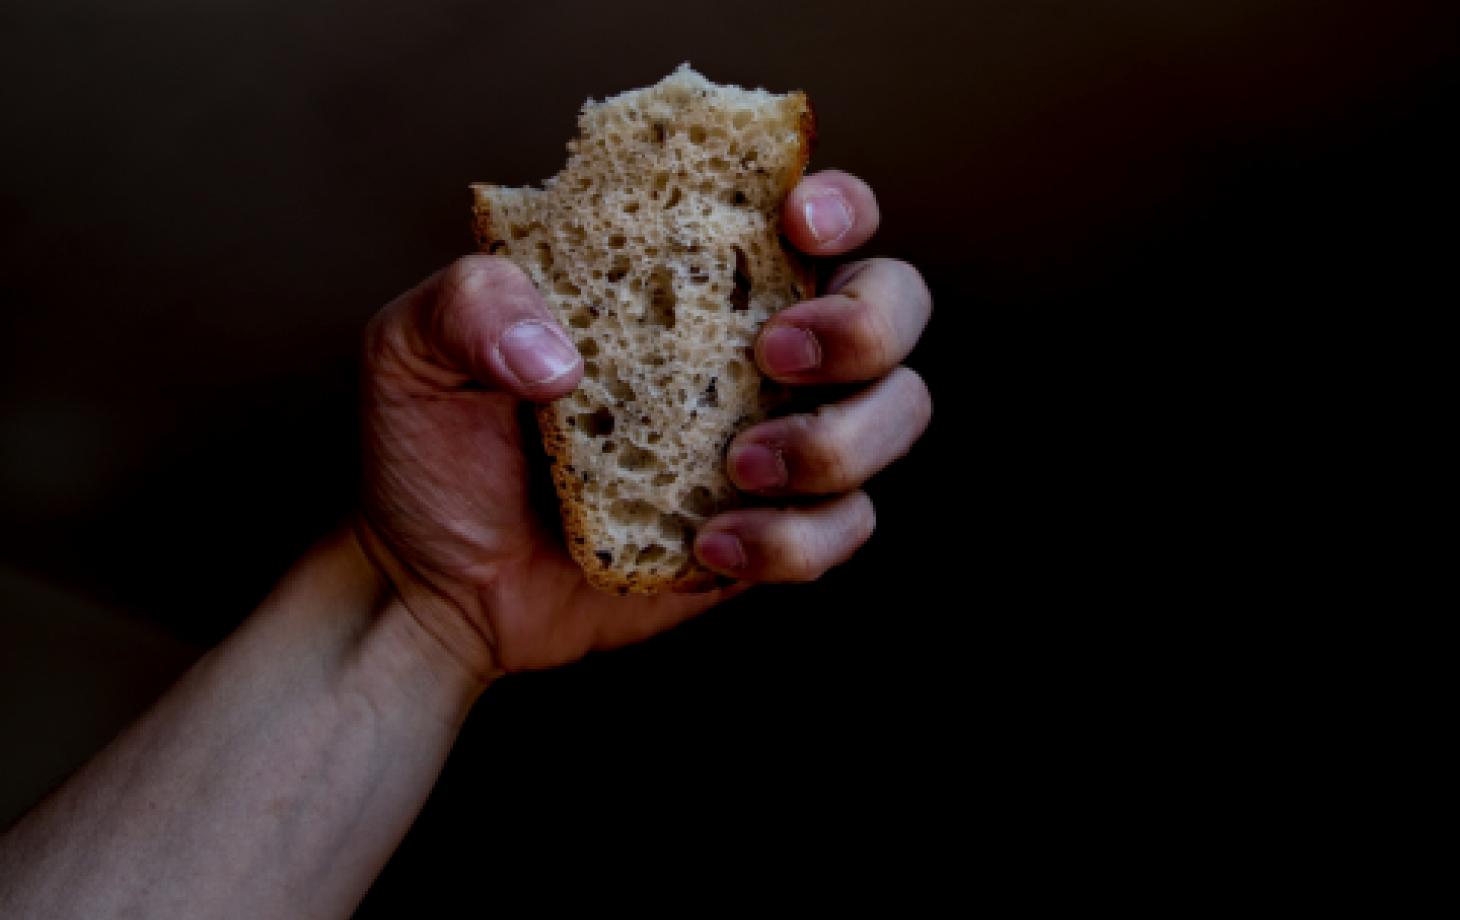 хлеб в руке, голод, прожиточный минимум